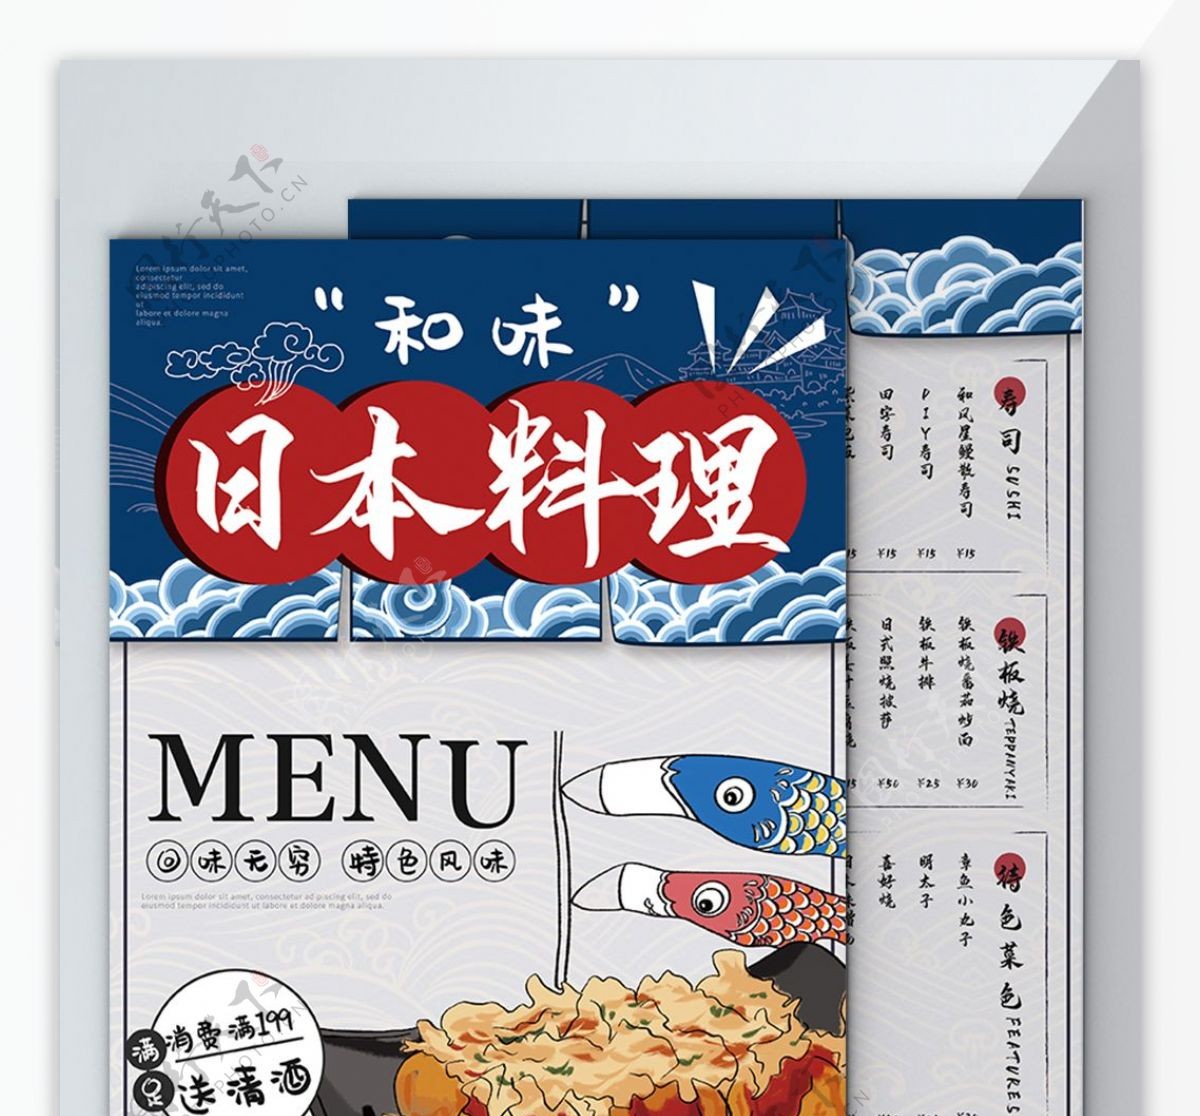 日本料理和风手绘日式菜单DM